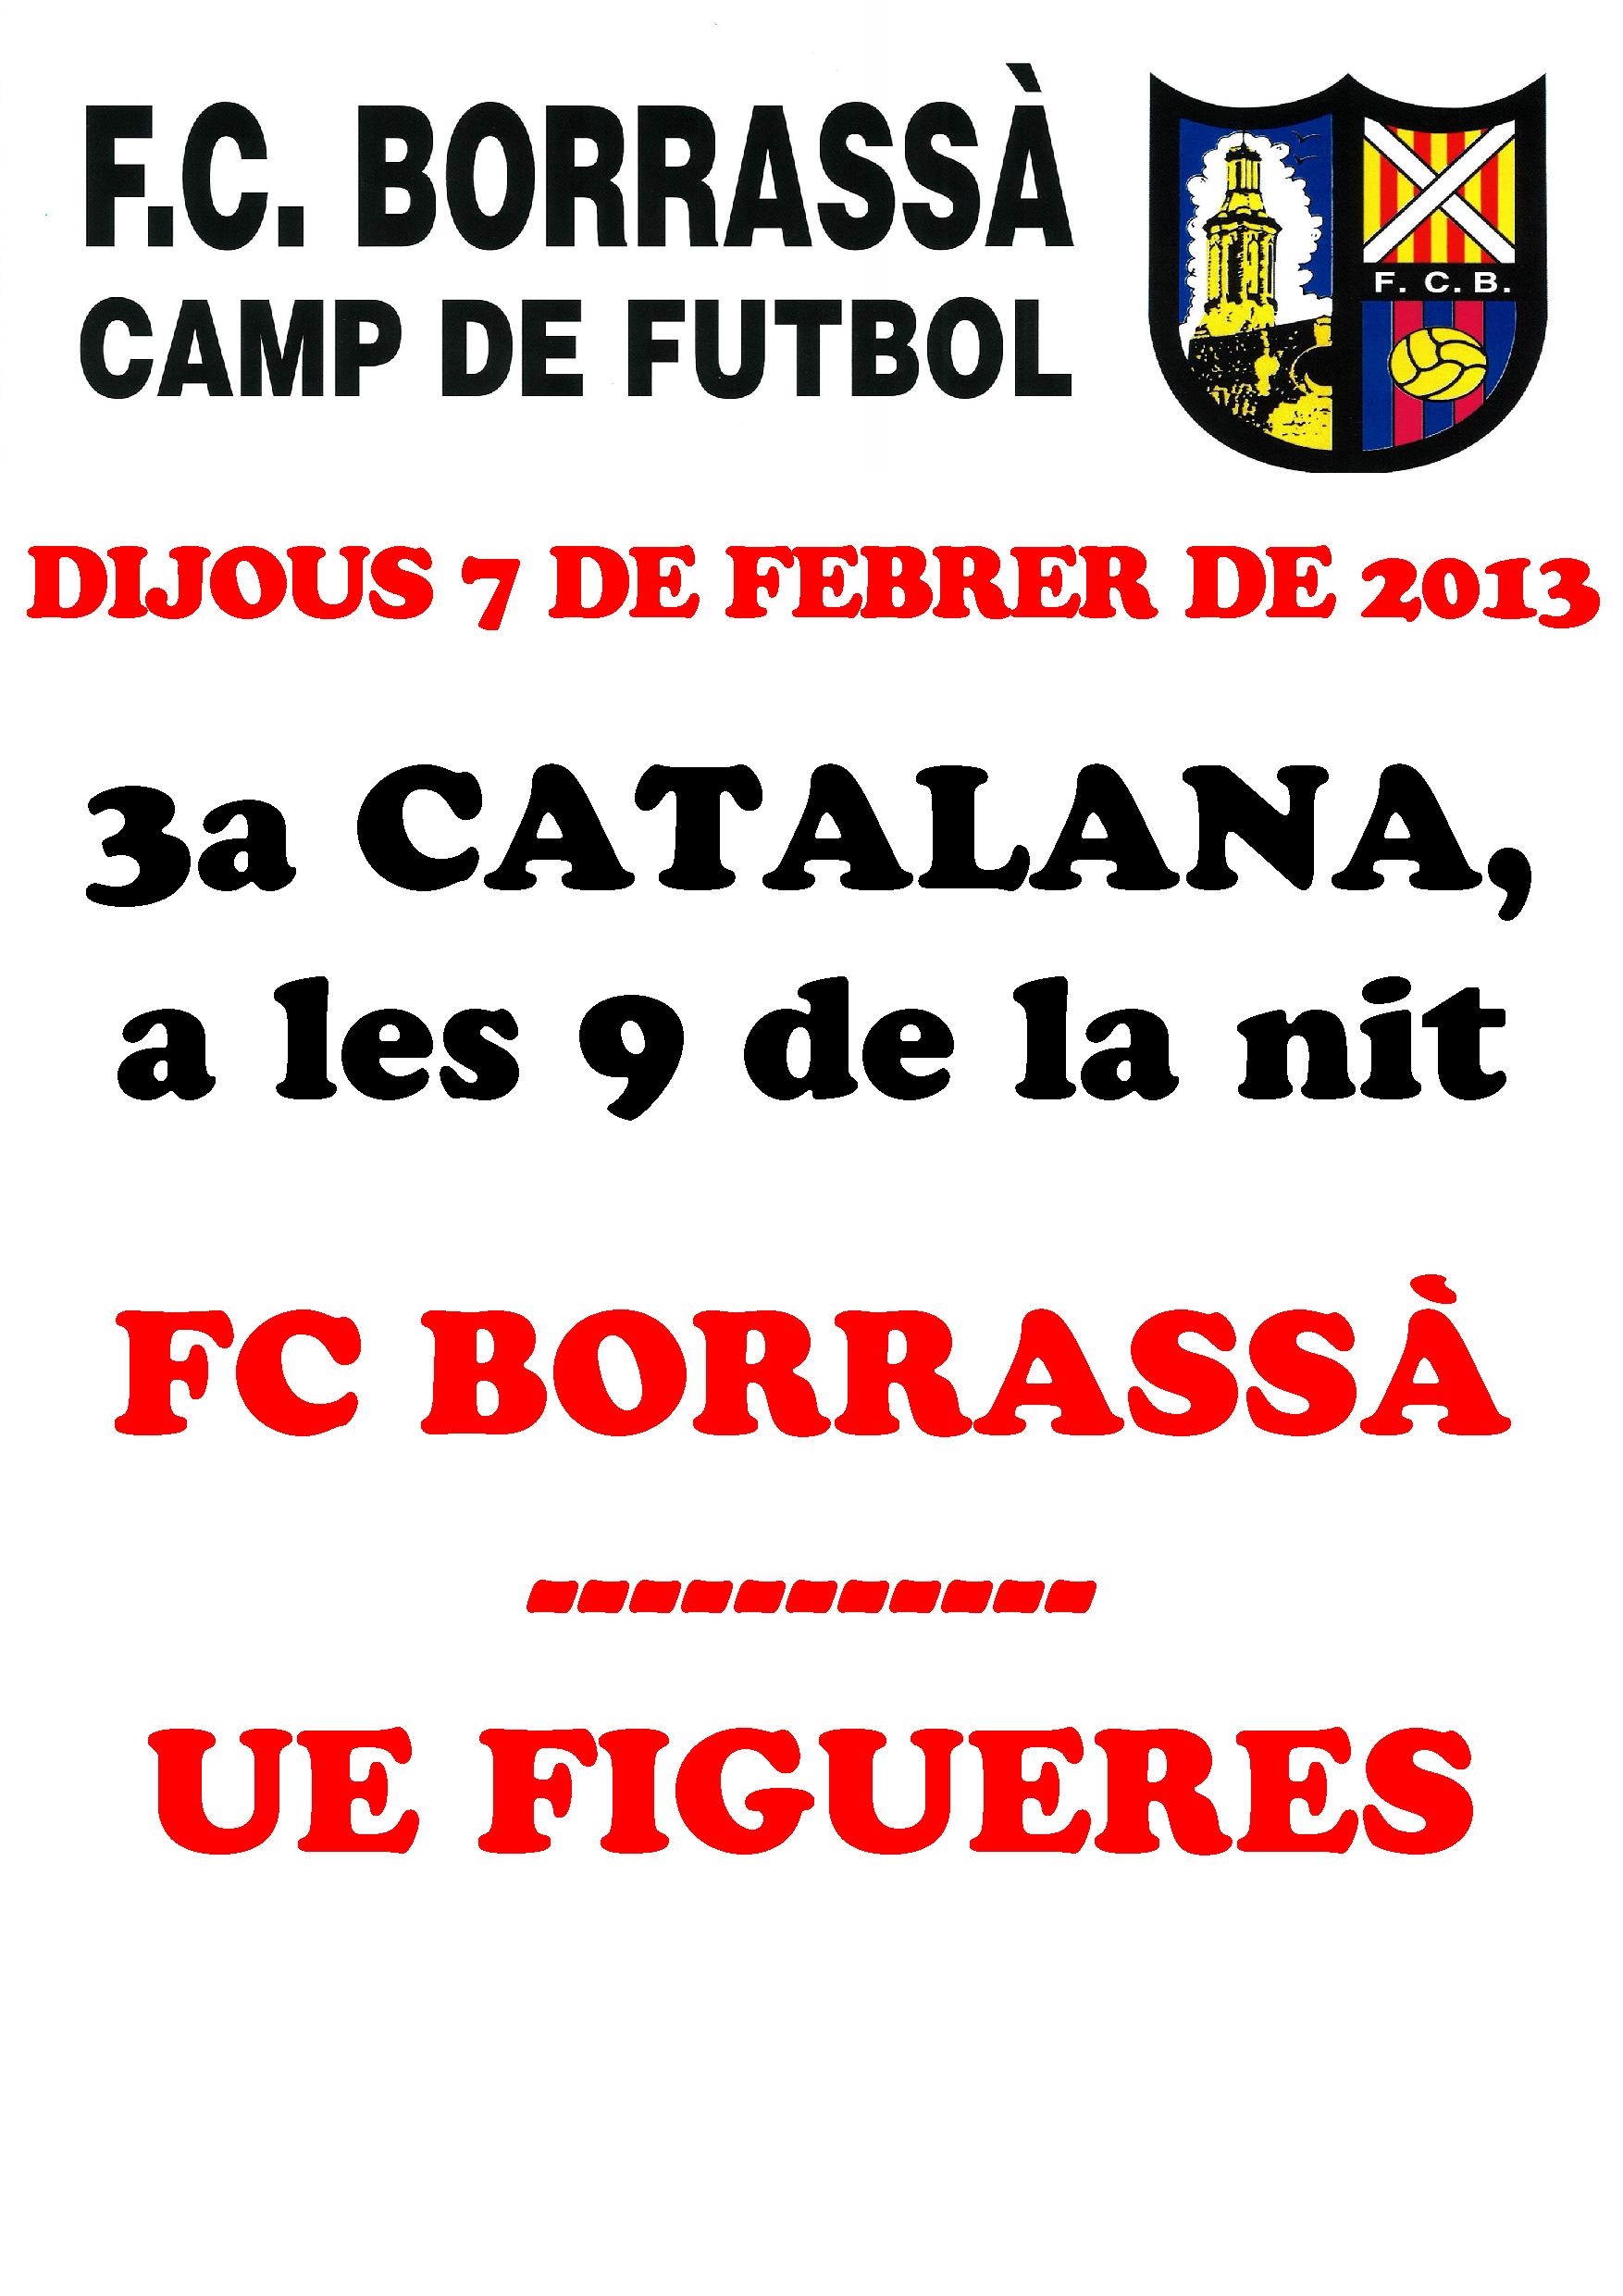 Aquest dijous, l'equip del Futbol Club Borrassà que milita a 3a Catalana s'enfrontarà amb el de la Unió Esportiva Figueres, a partir de les 9 del vespre al Camp d'Esports Municipal.